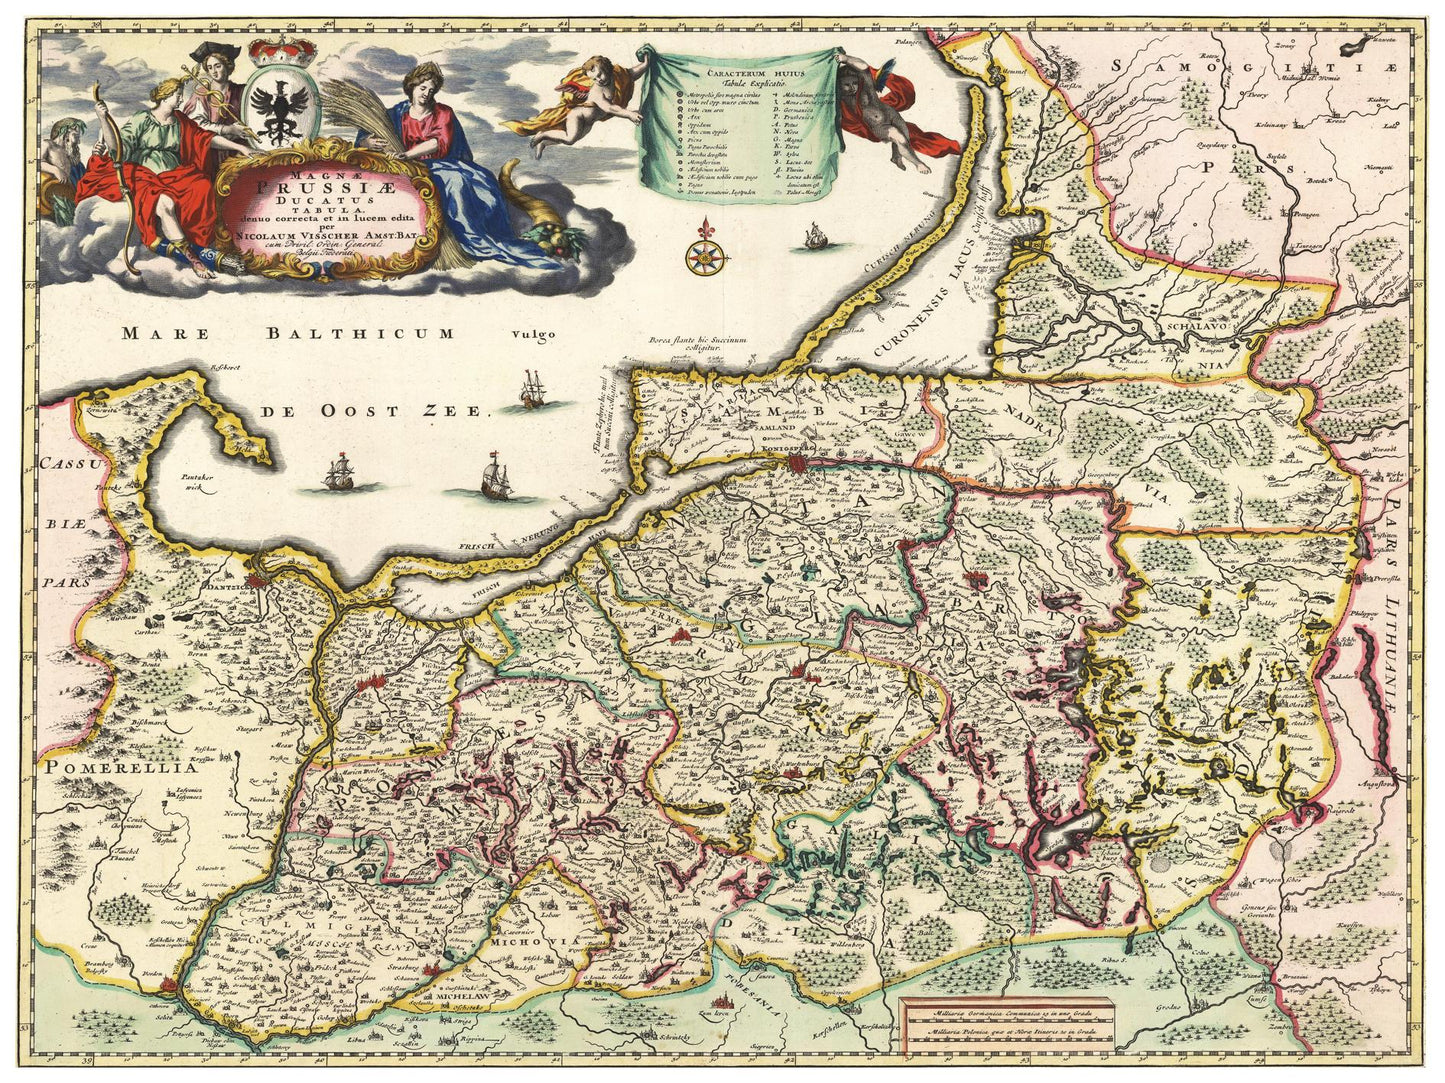 Historische Landkarte Preußen um 1680